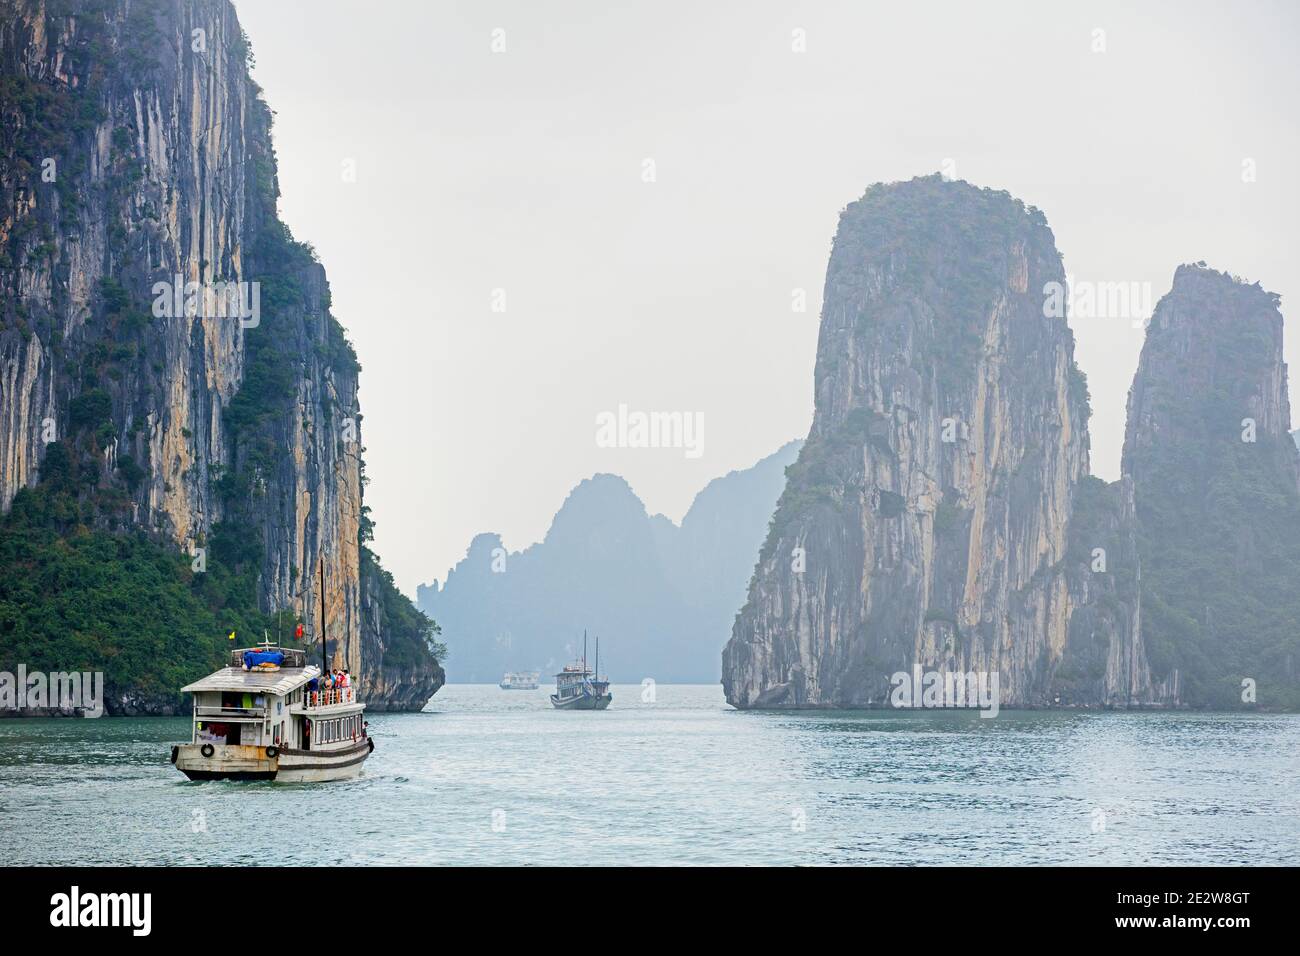 Barche turistiche e isole monolitiche di pietra calcarea a ha Long Bay / Baia di ha Long / Vinh ha Long nella nebbia, provincia di Quang Ninh, Vietnam Foto Stock